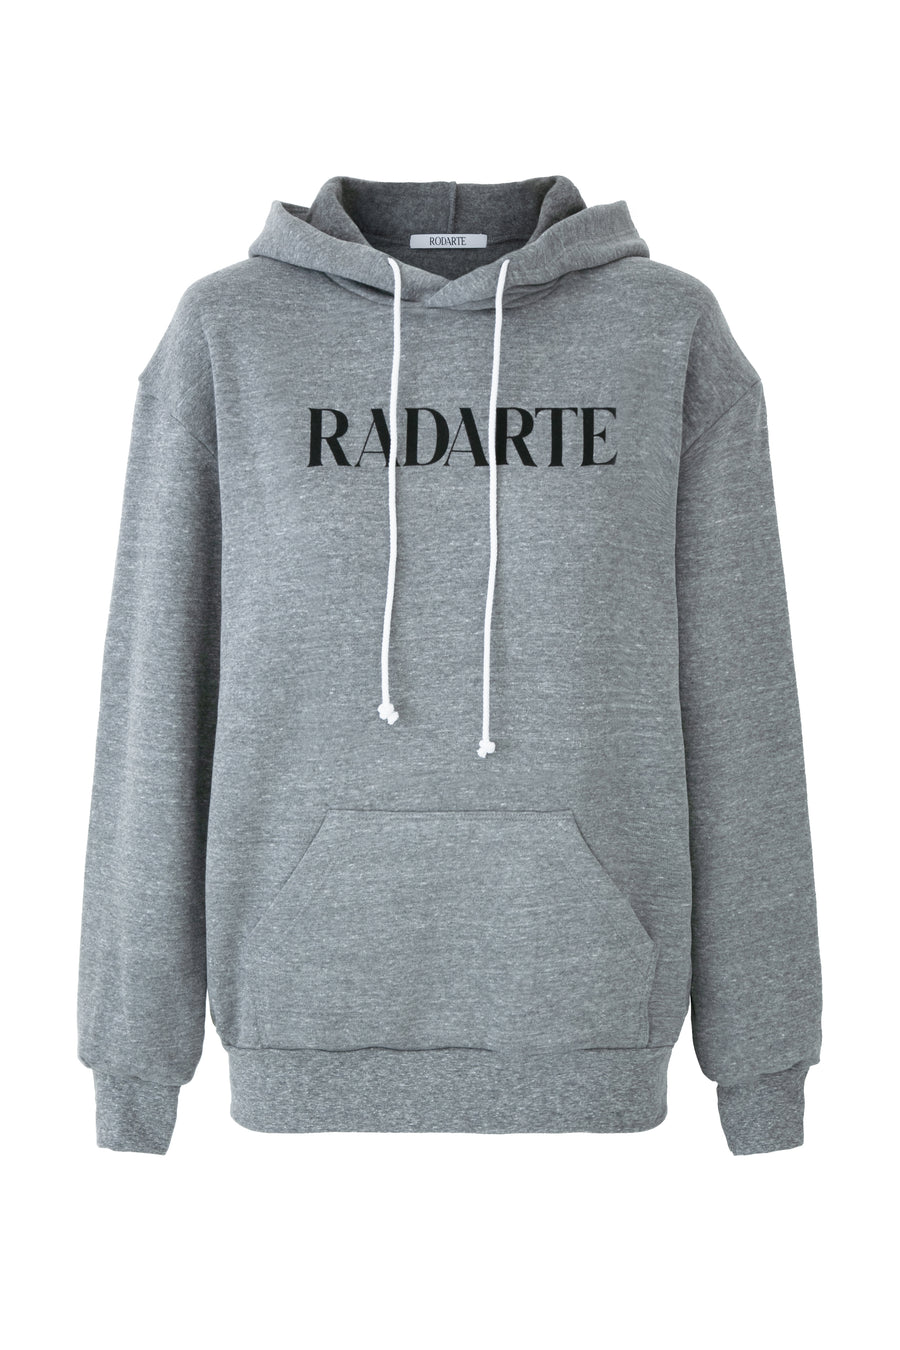 Radarte Logo Hoodie